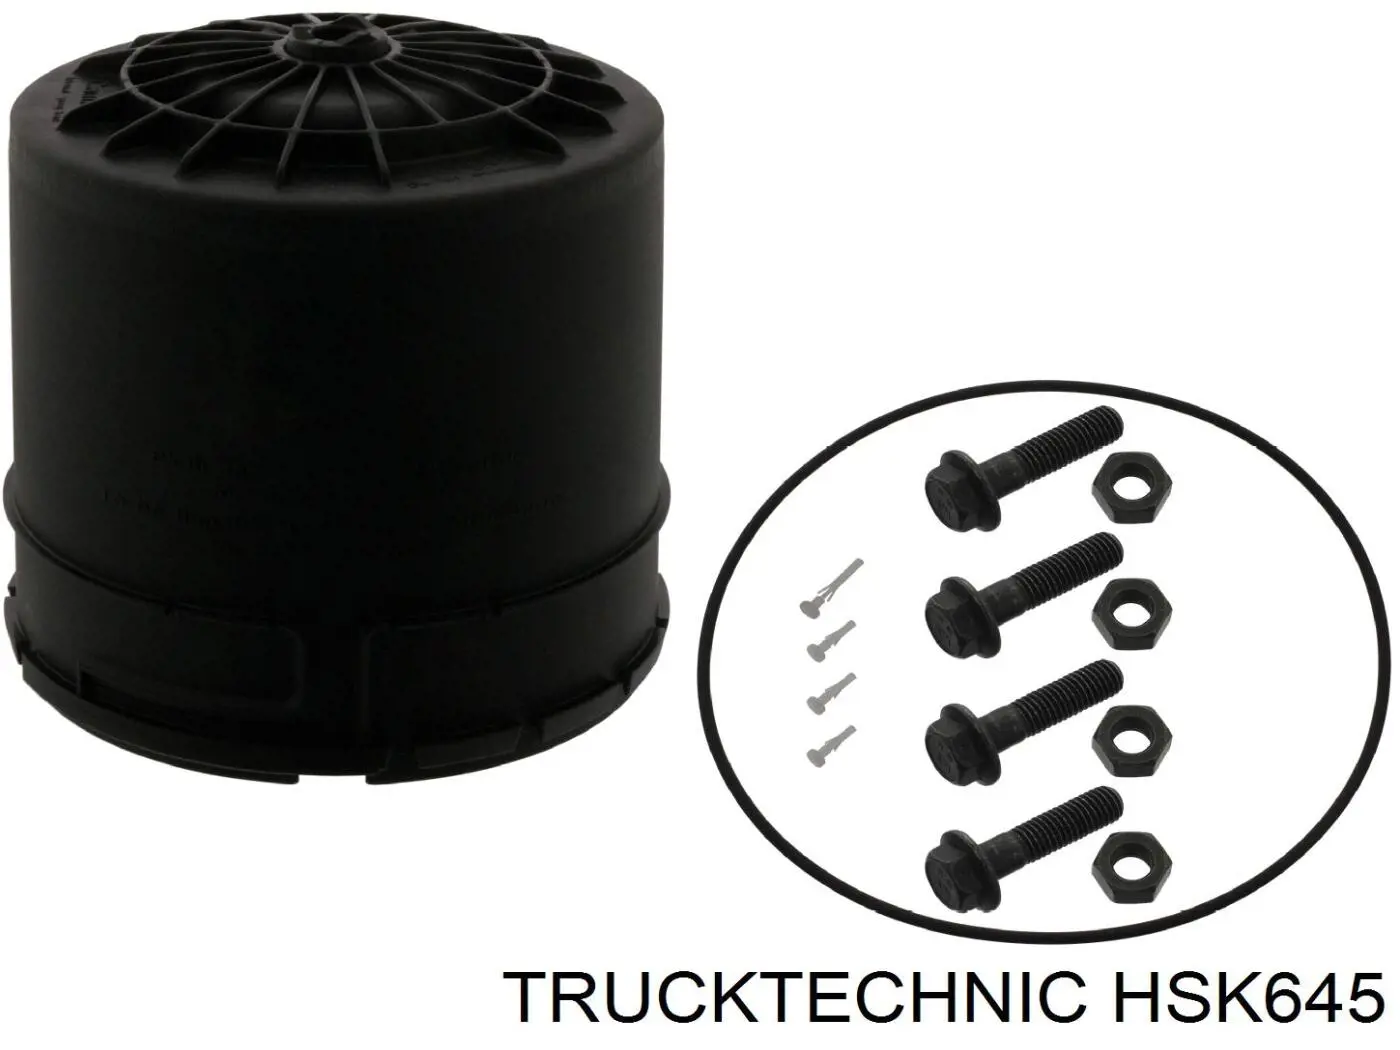 Фильтр осушителя воздуха (влагомаслоотделителя) (TRUCK) Trucktechnic HSK645